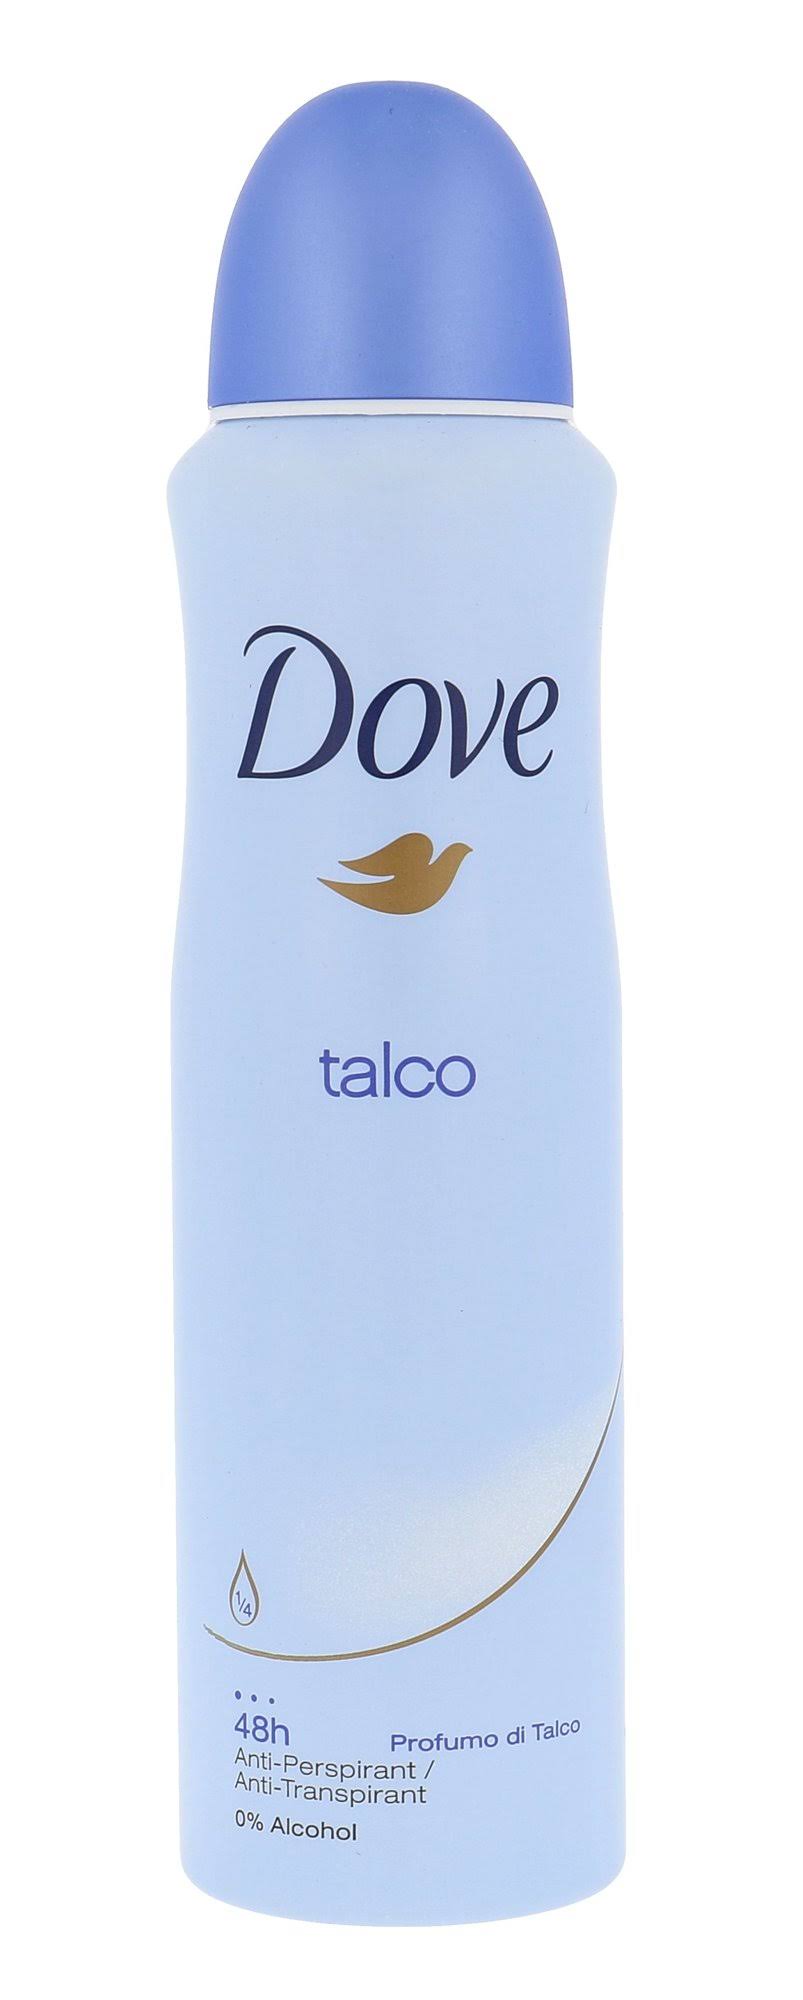 Dove Body Spray 48h Anti Perspirant Talco Deodorant - 150ml